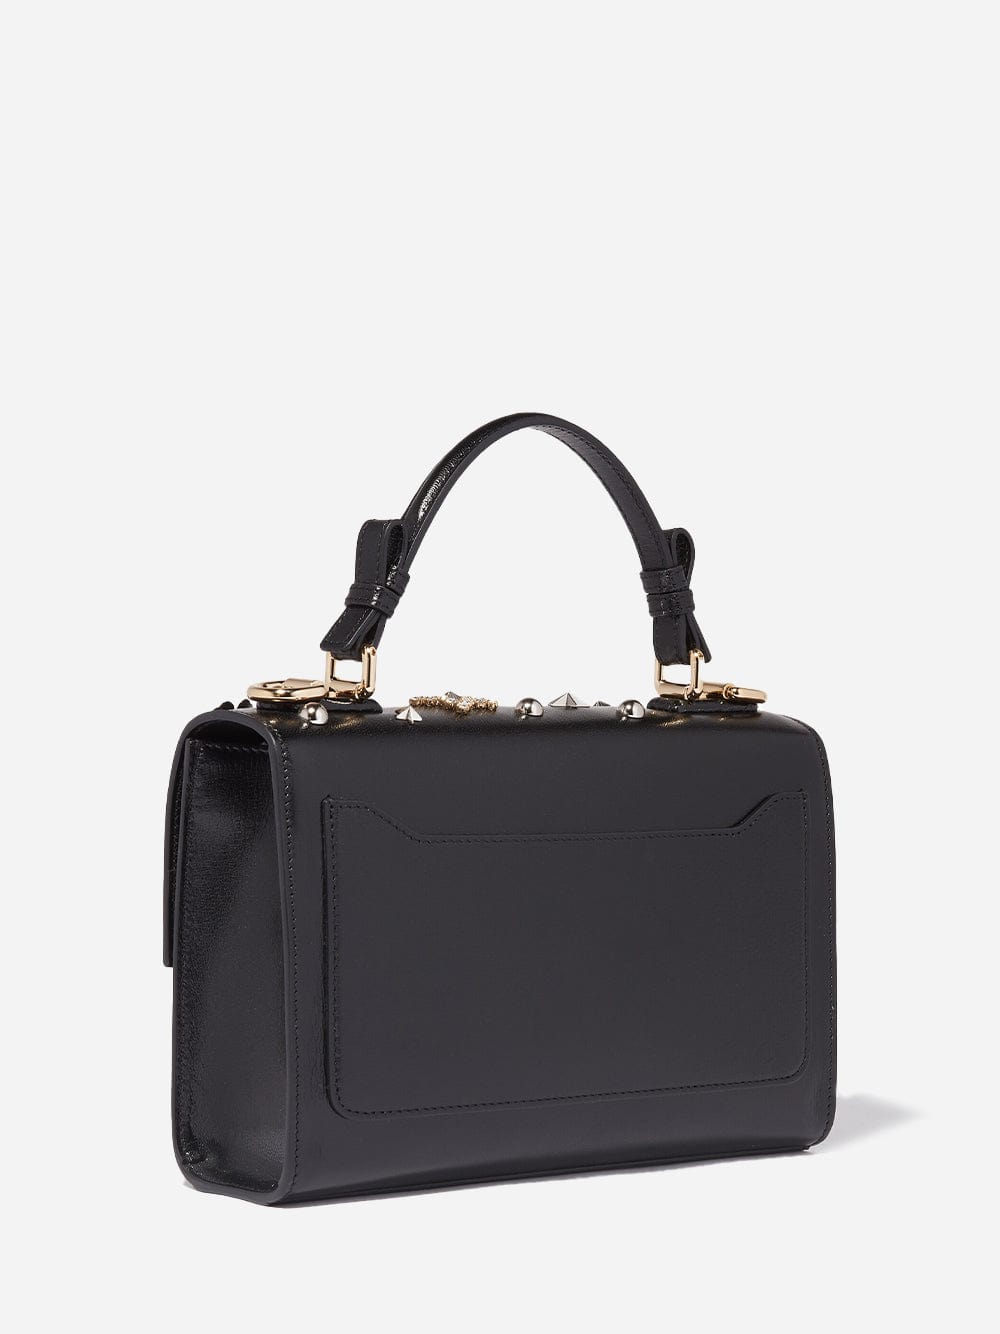 Dolce & Gabbana Star-Embellished Lucia Shoulder Bag